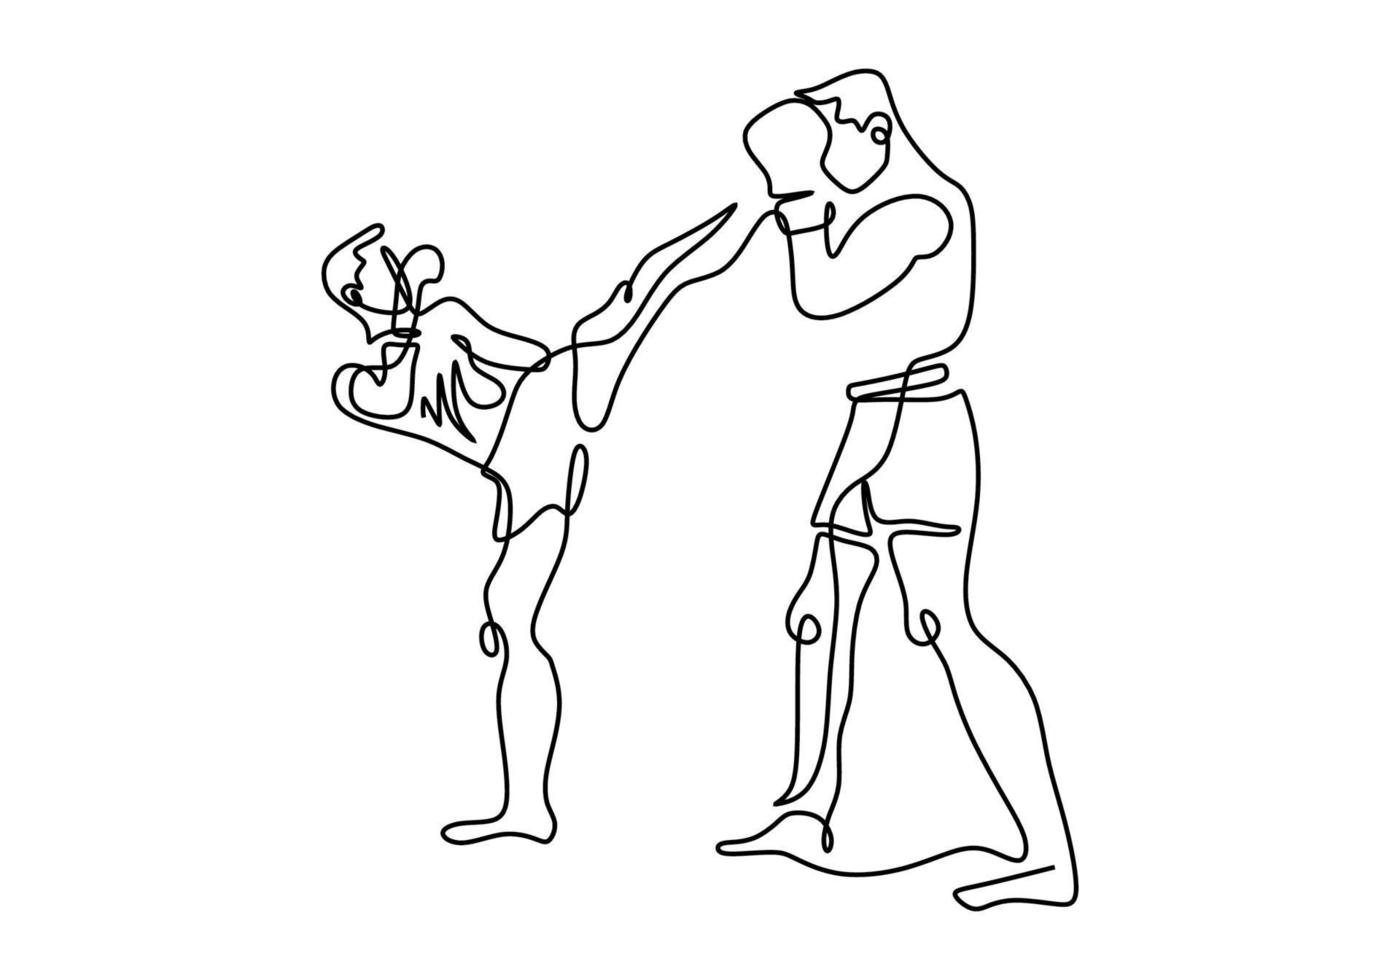 kontinuerlig en linje ritning av två man spelar boxning isolerad på vit bakgrund. professionell ung boxare man gör stretching innan du tränar boxning. minimalistisk stil vektorillustration vektor